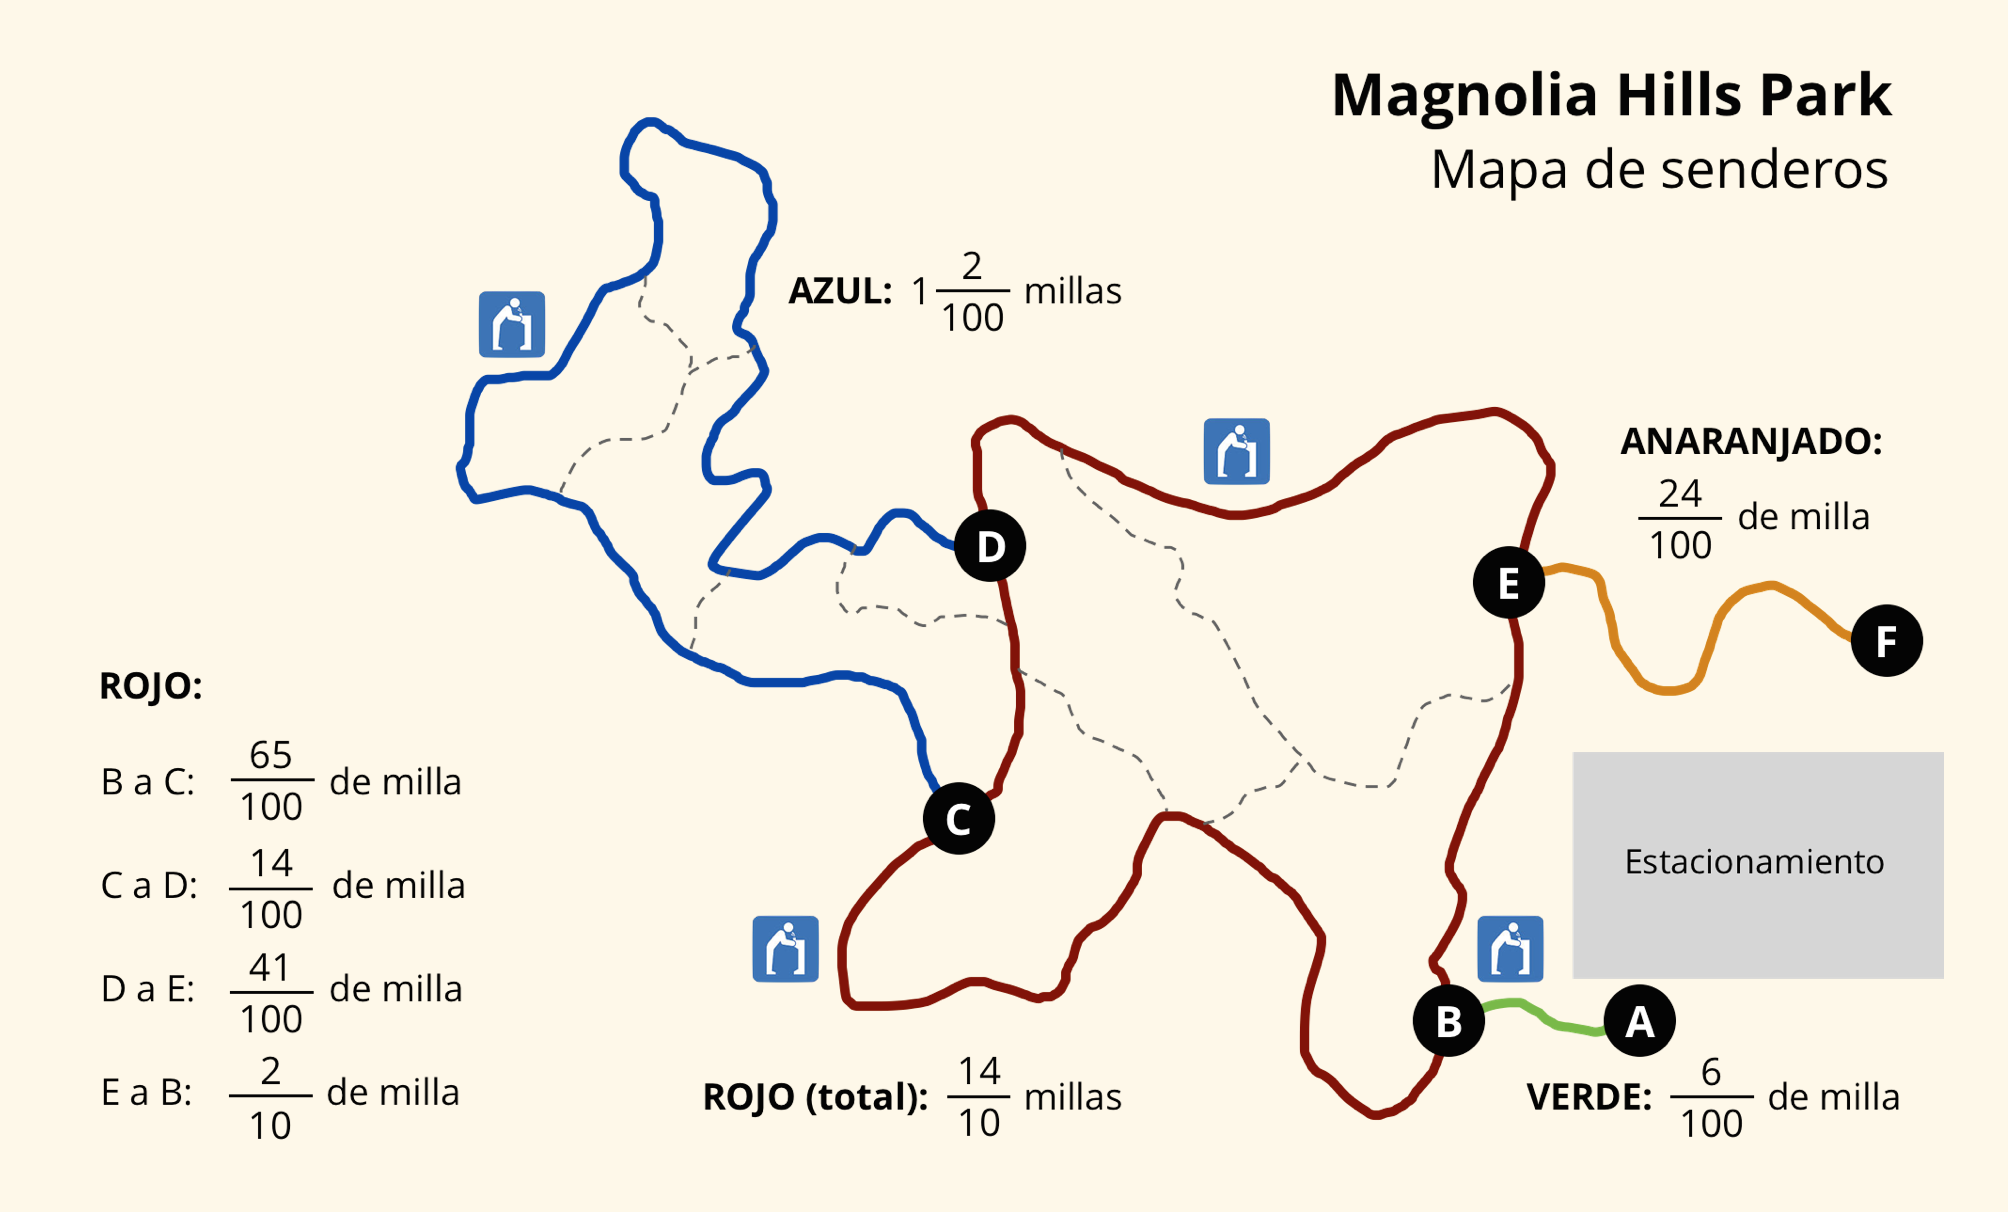 Mapa de 4 senderos del parque Magnolia Hills. Se incluyen las longitudes de los senderos y ubicaciones de baños en puntos específicos. Las líneas de los senderos son de color rojo, azul, anaranjado y verde.